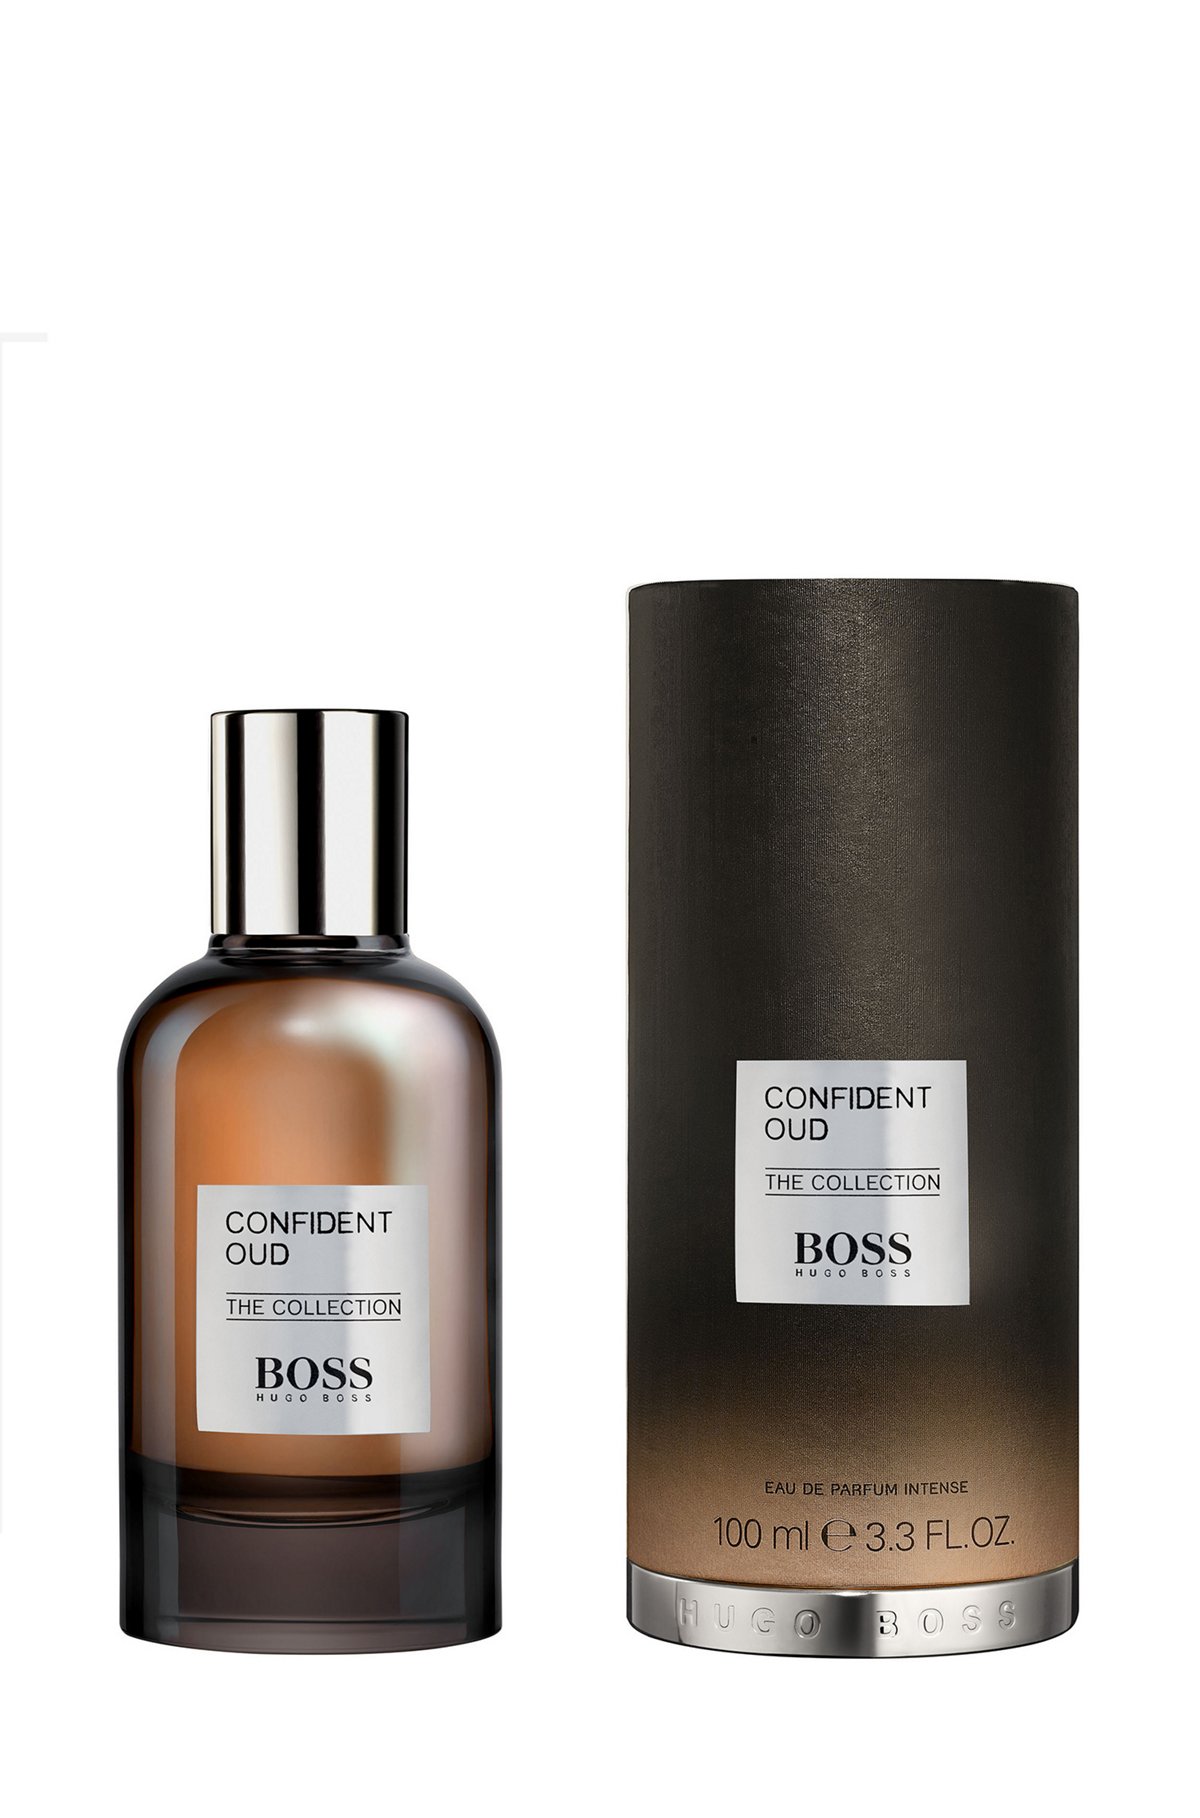 BOSS The Collection Confident Oud eau de parfum 100ml, Assorted-Pre-Pack